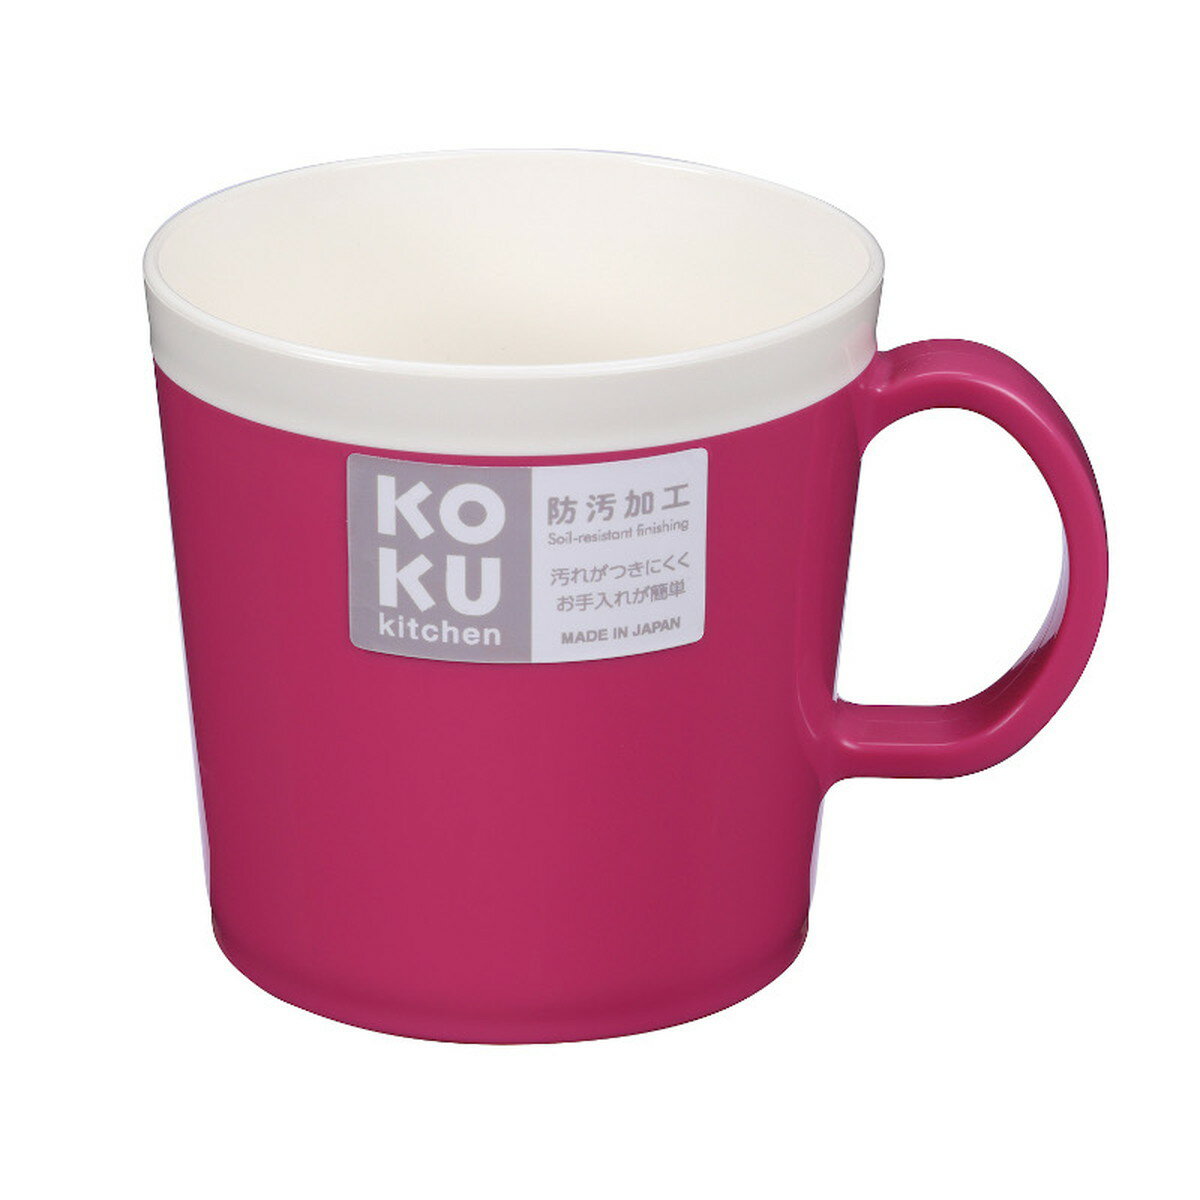 小久保工業所 KOKU マグカップ マゼンタピンクの商品画像